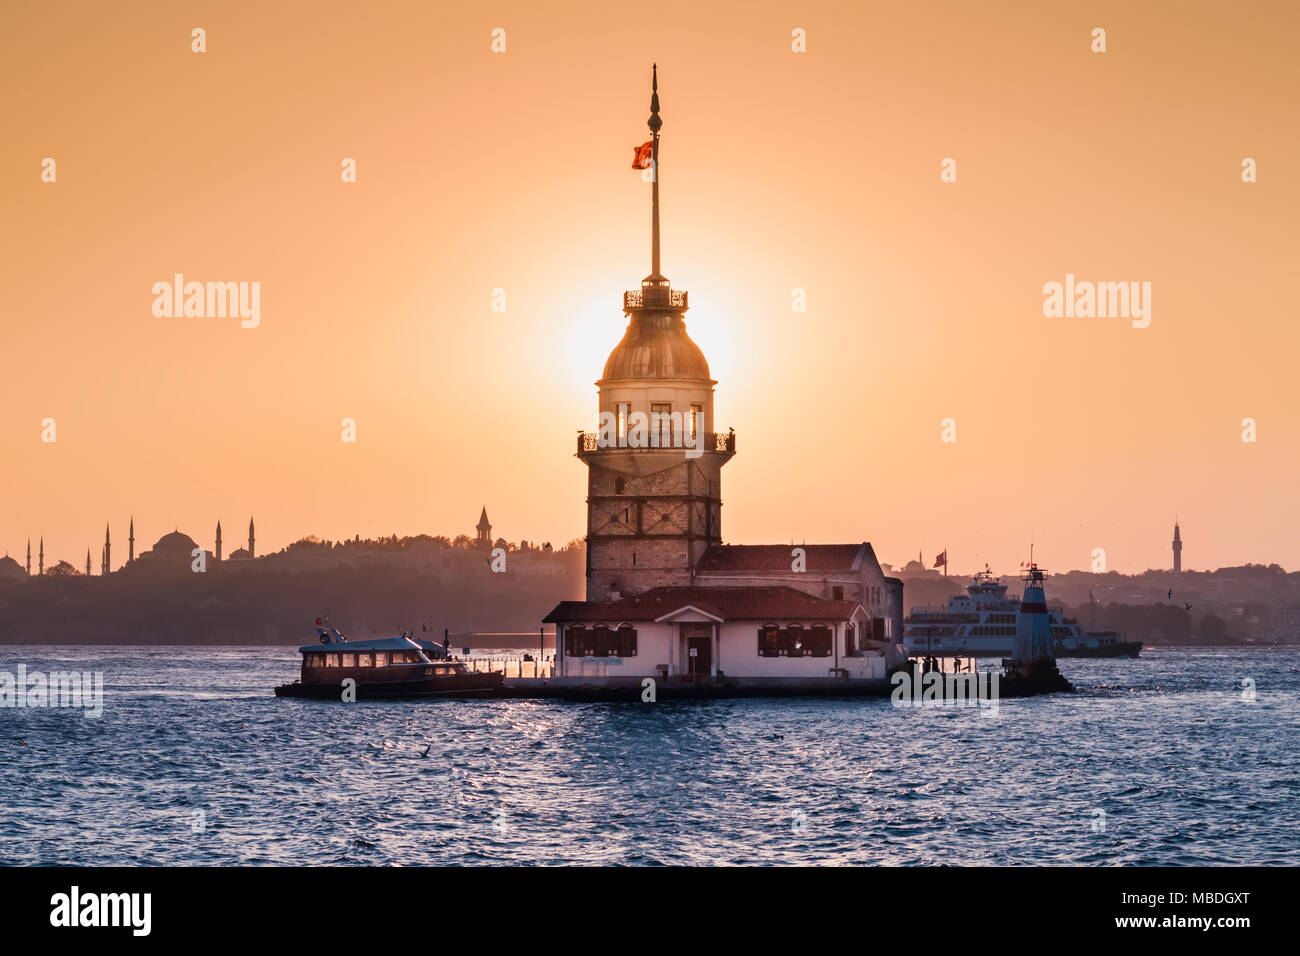 Maiden Tower or Kiz Kulesi Istanbul, Turkey Stock Photo